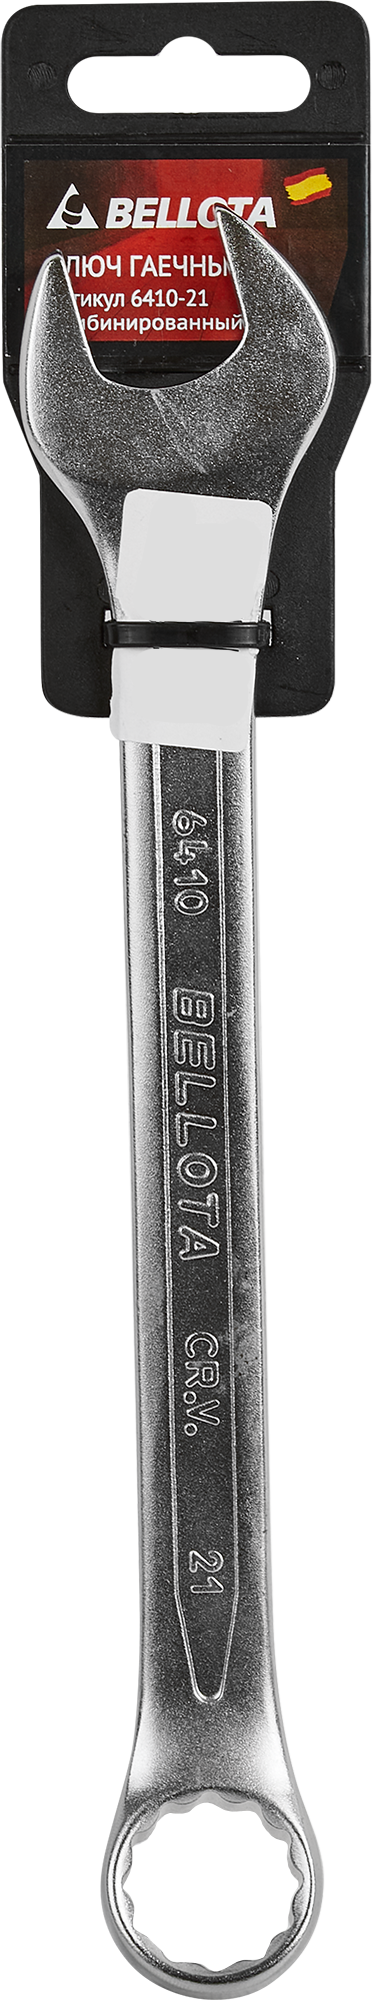 Ключ комбинированный Bellota 6410-21 21 мм - фото №7